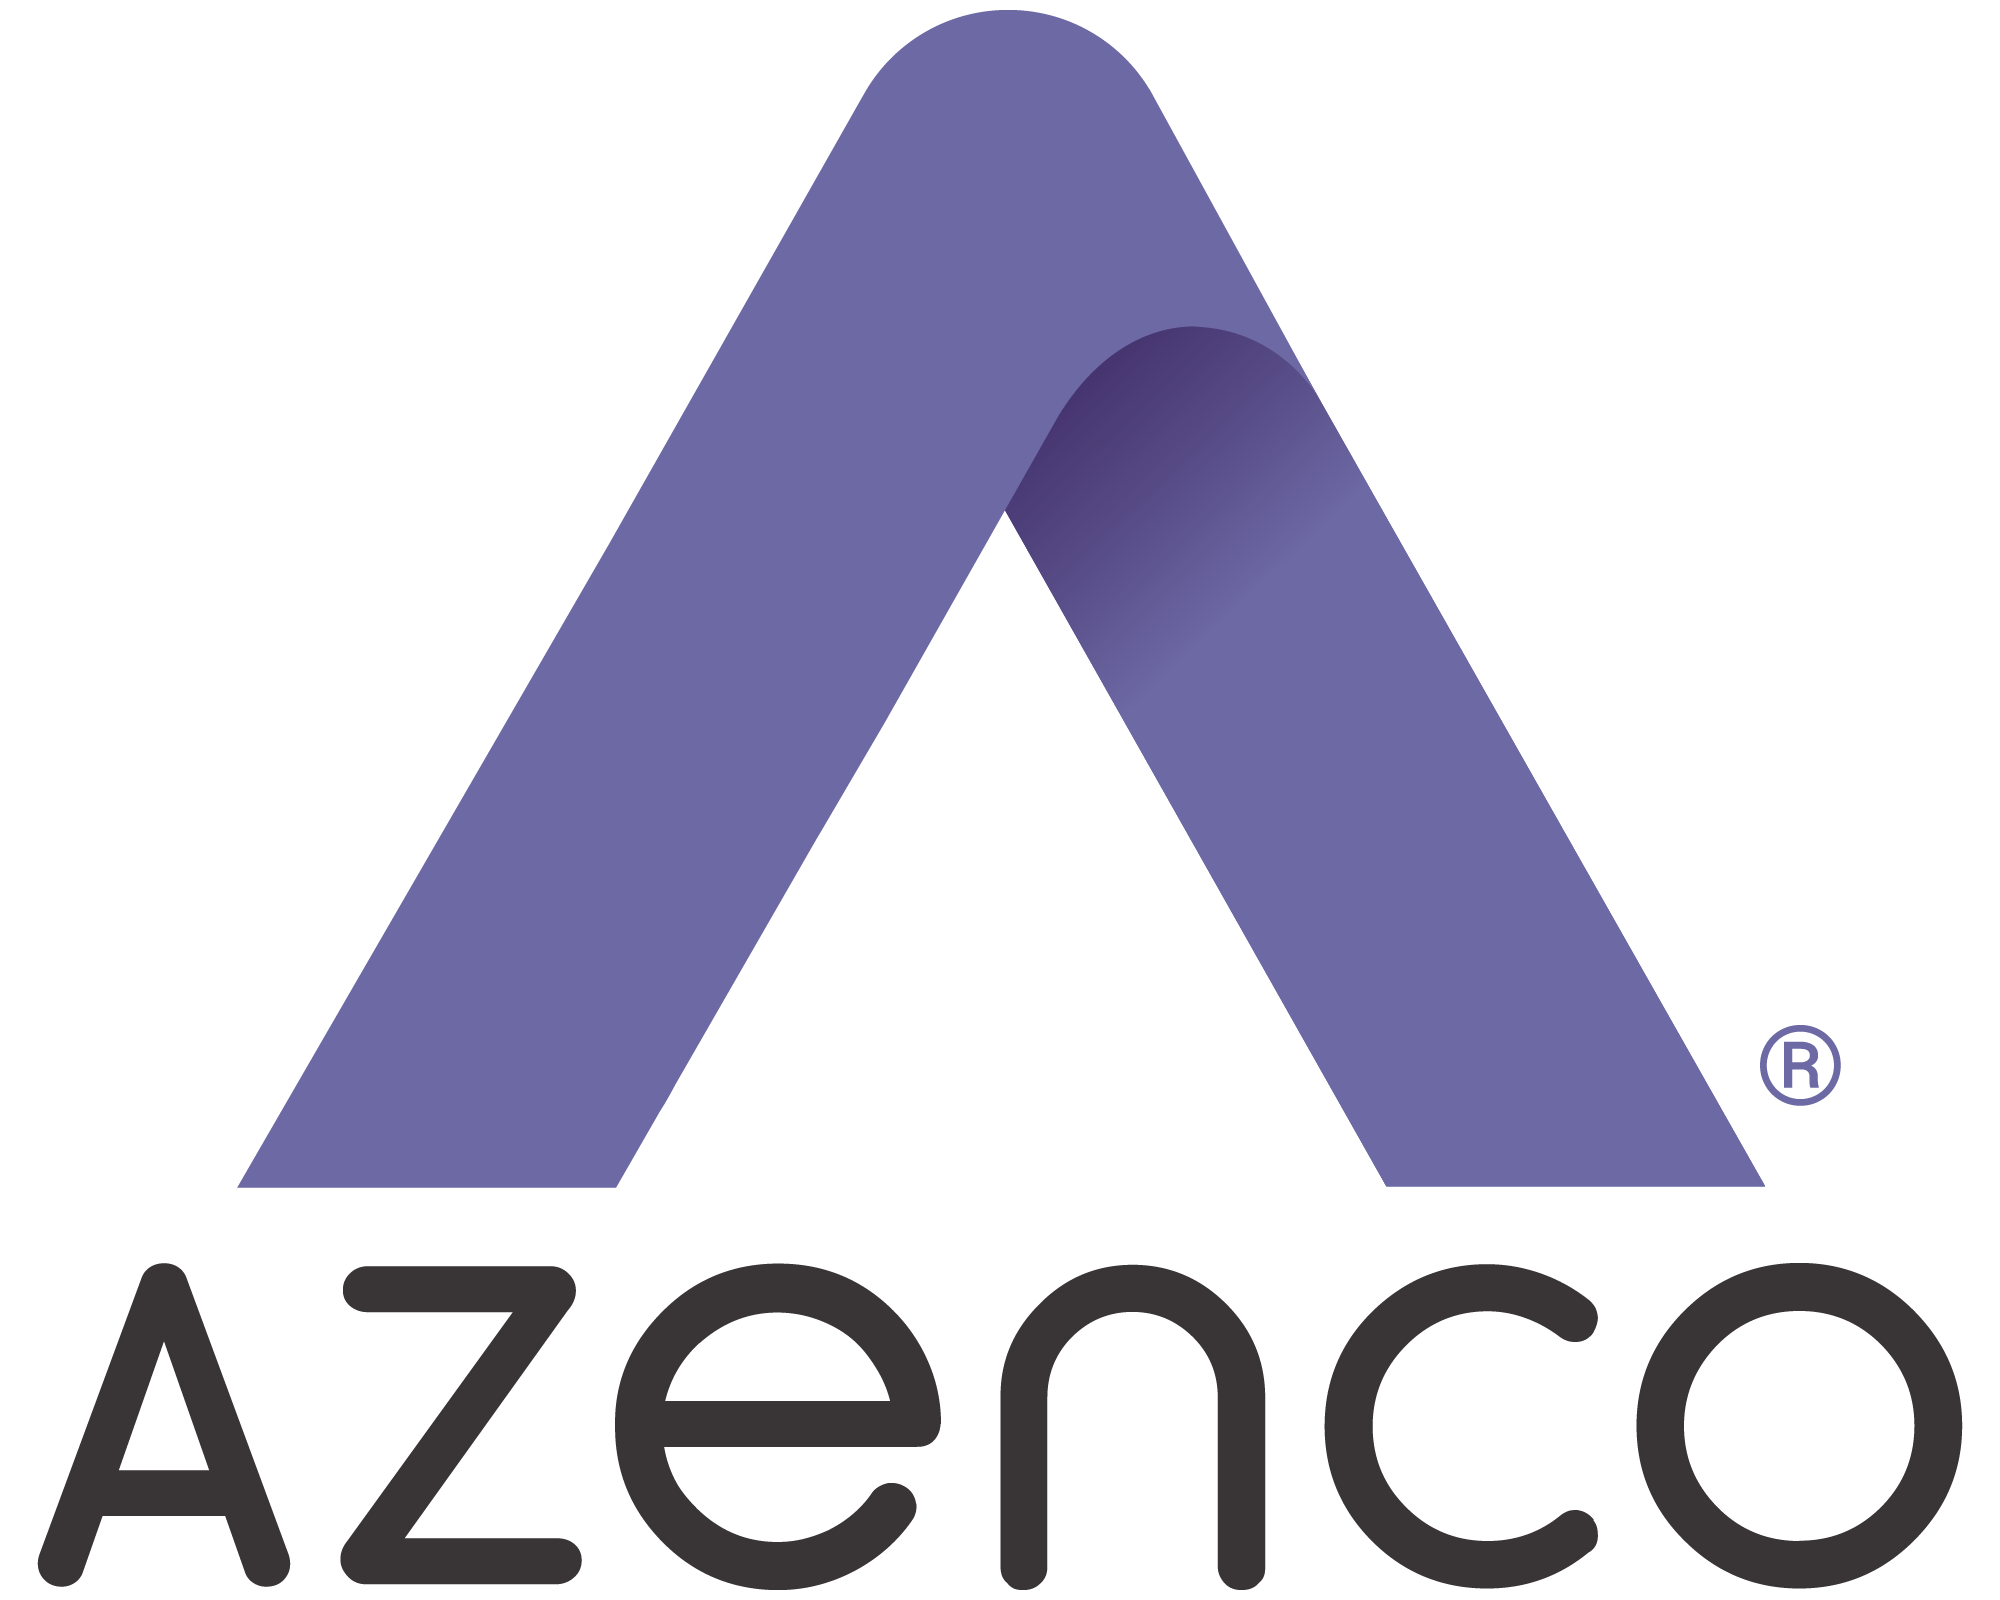 Azenco logo registered